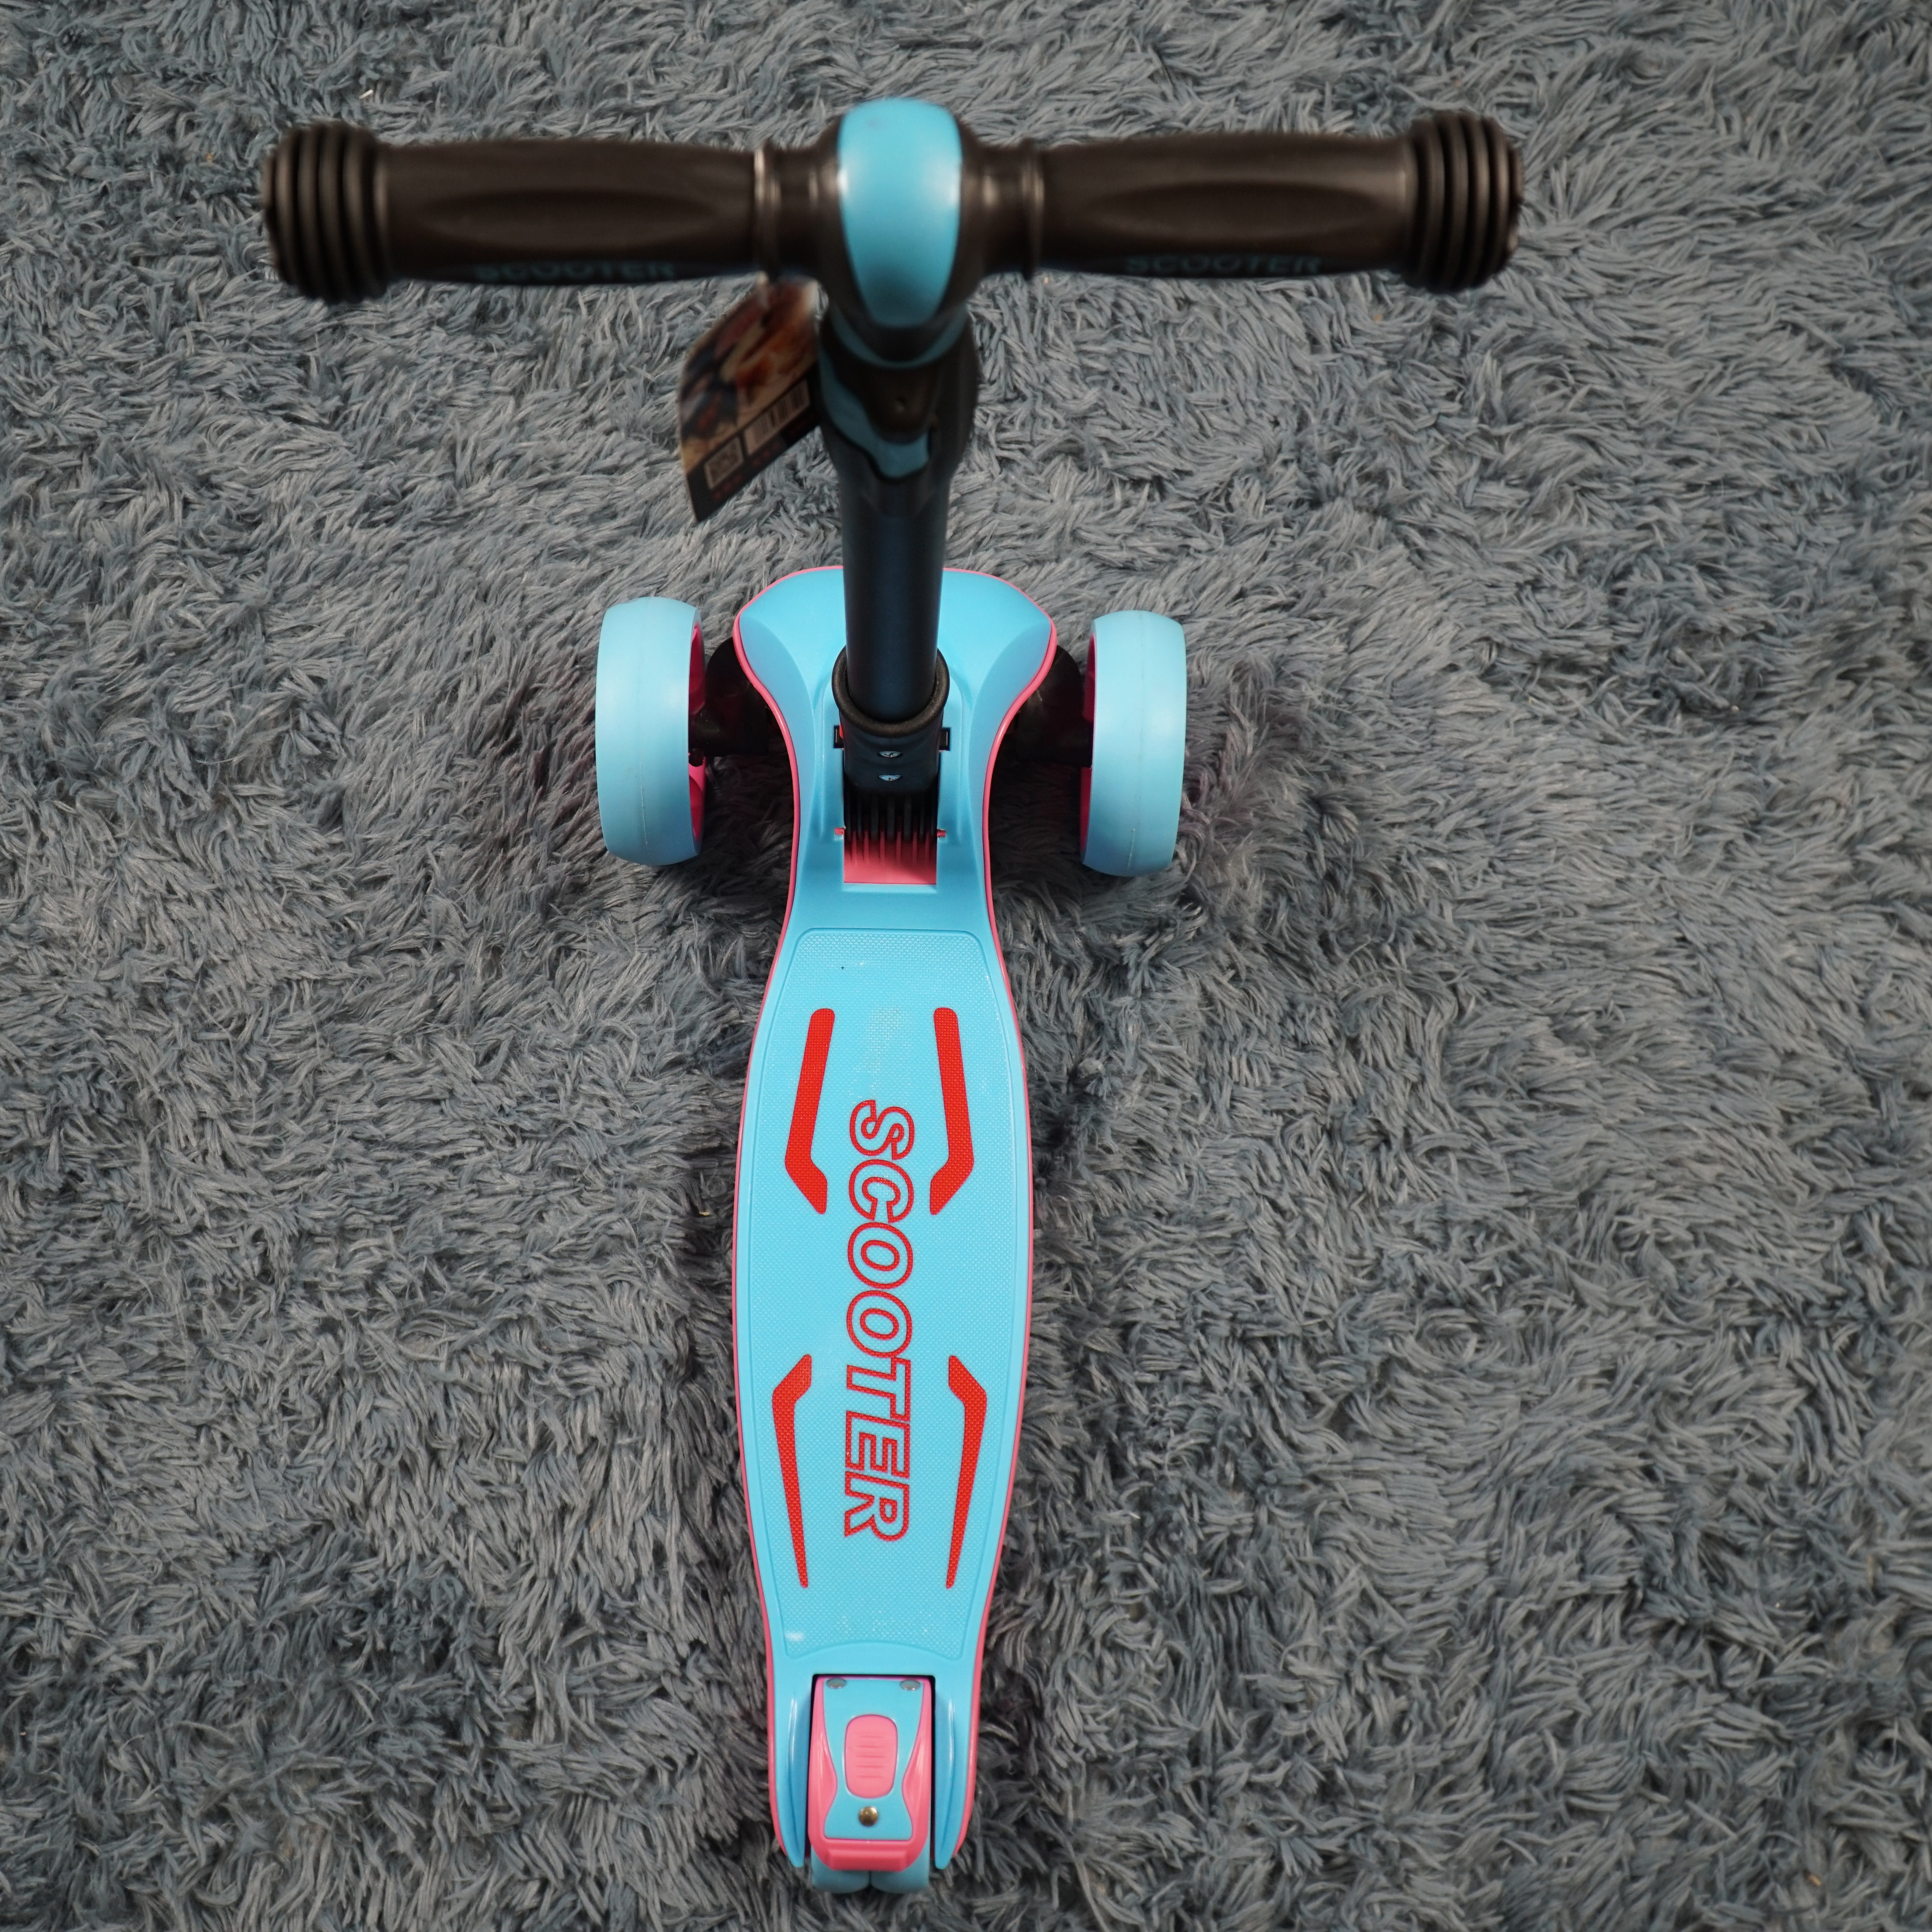 Xe Trượt Scooter  BIEIRRA D01 màu Xanh cao cấp có thế gập gọn chịu được trọng lượng lên đến 50kg và có thể điều chỉnh chiều cao theo sự phát triển của bé